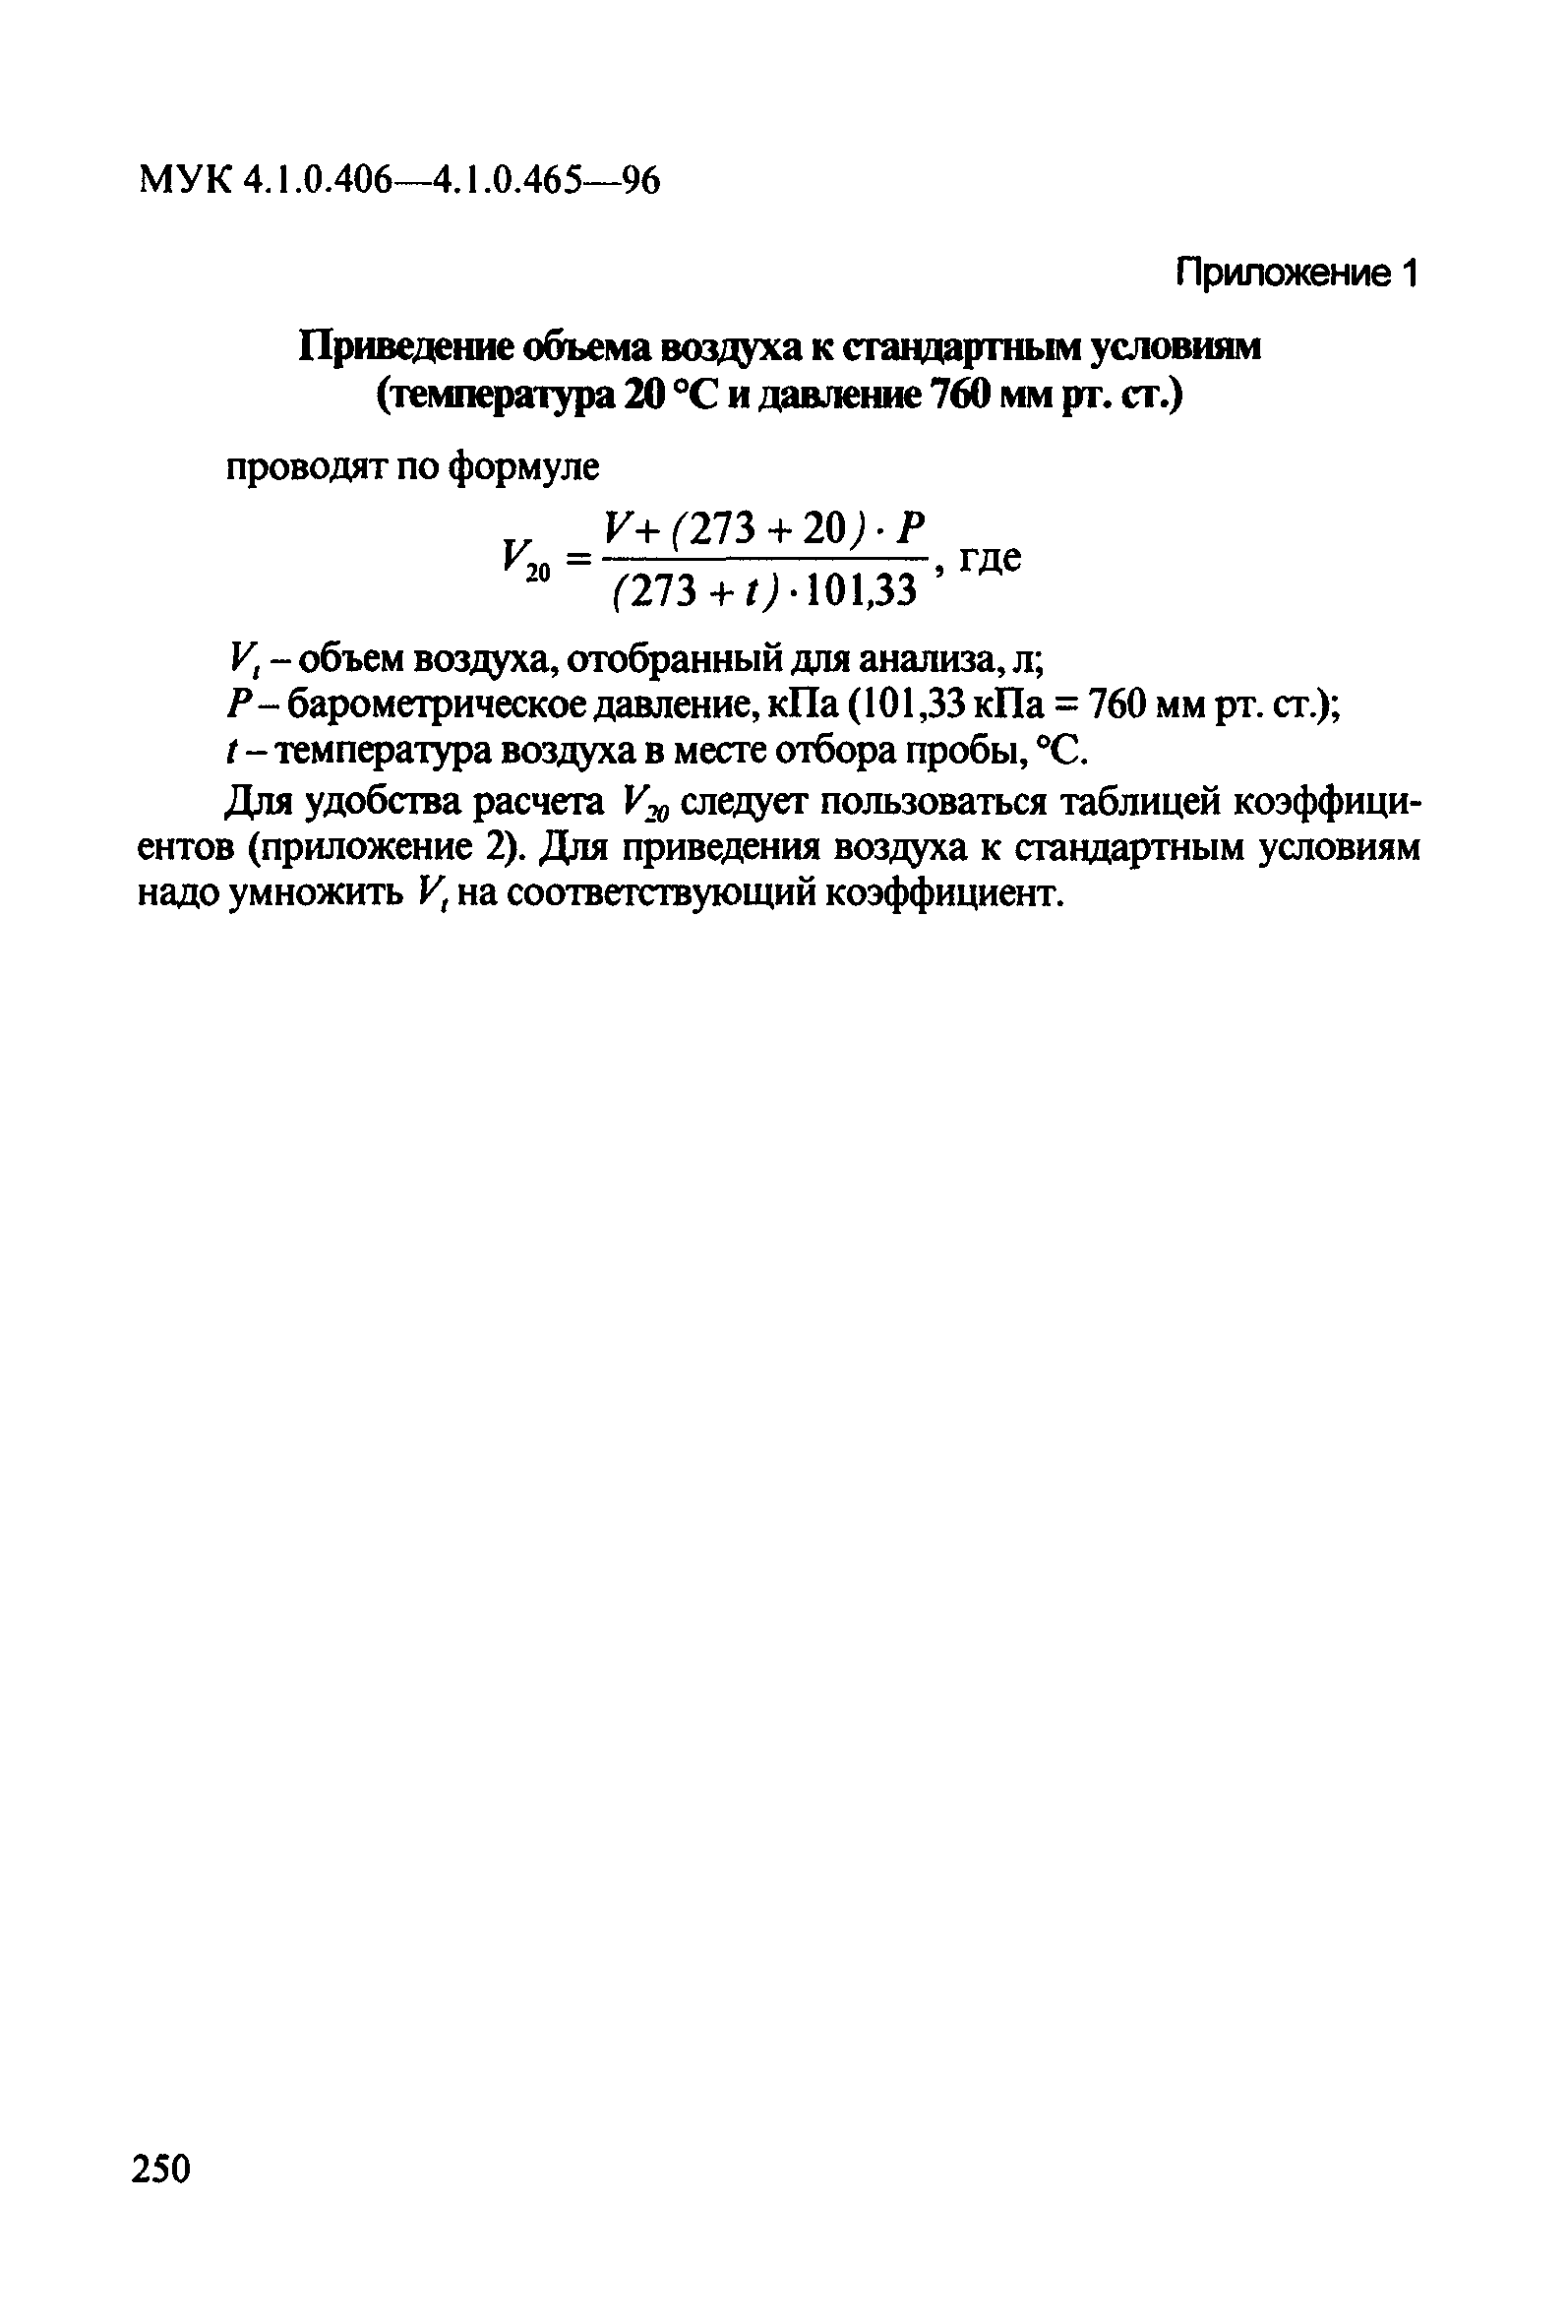 МУК 4.1.0.449-96